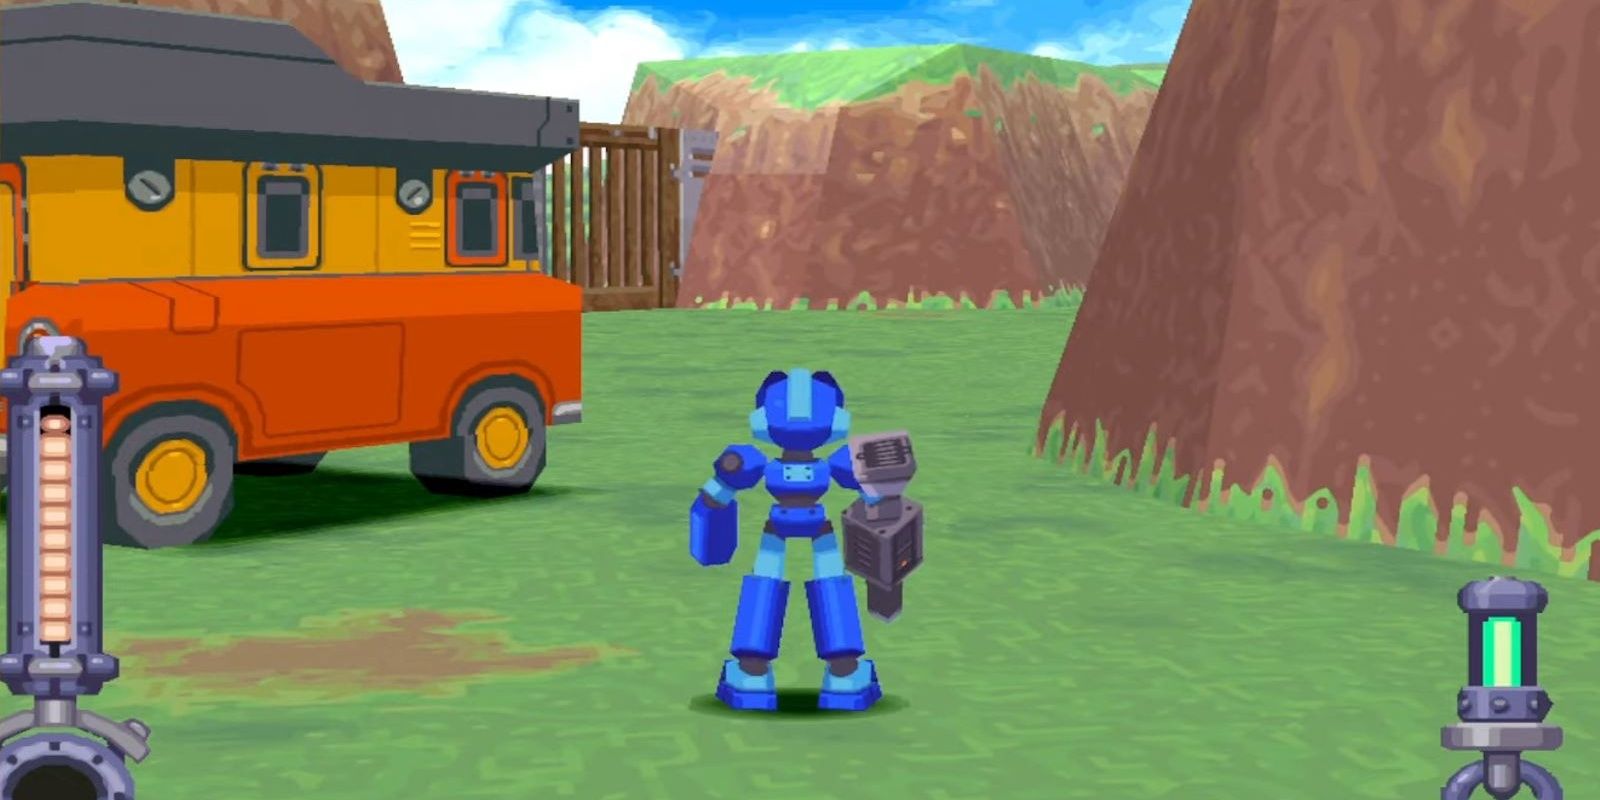 Mega Man next to the Support Car in Mega Man Legends